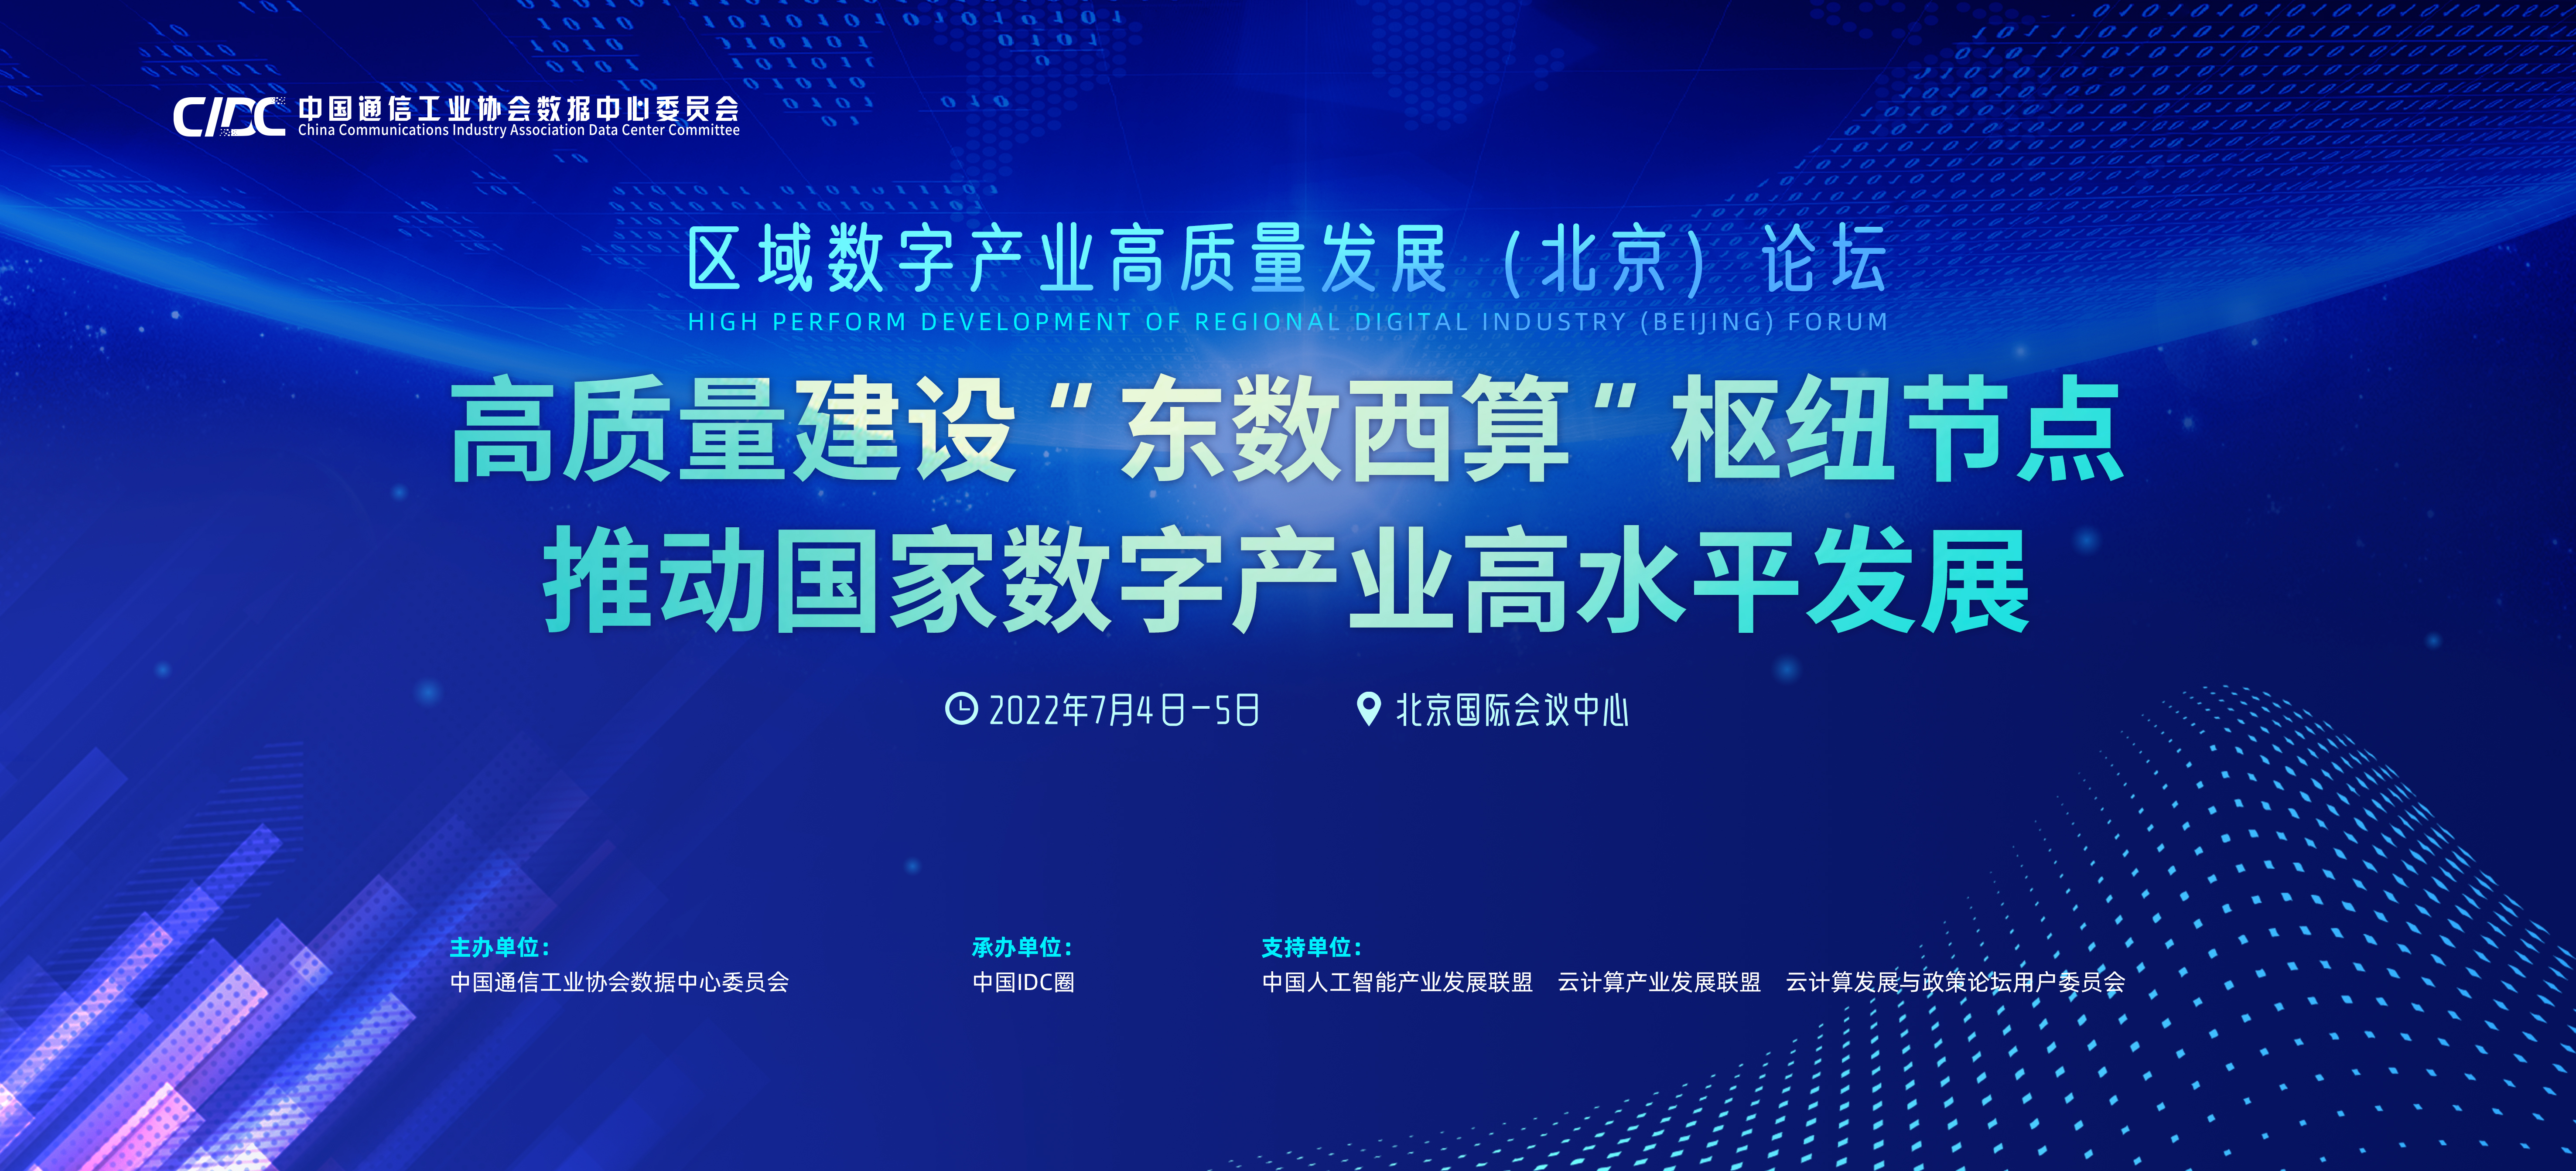 聚焦东数西算 区域数字产业高质量发展(北京)论坛6亮点早知道-互连网